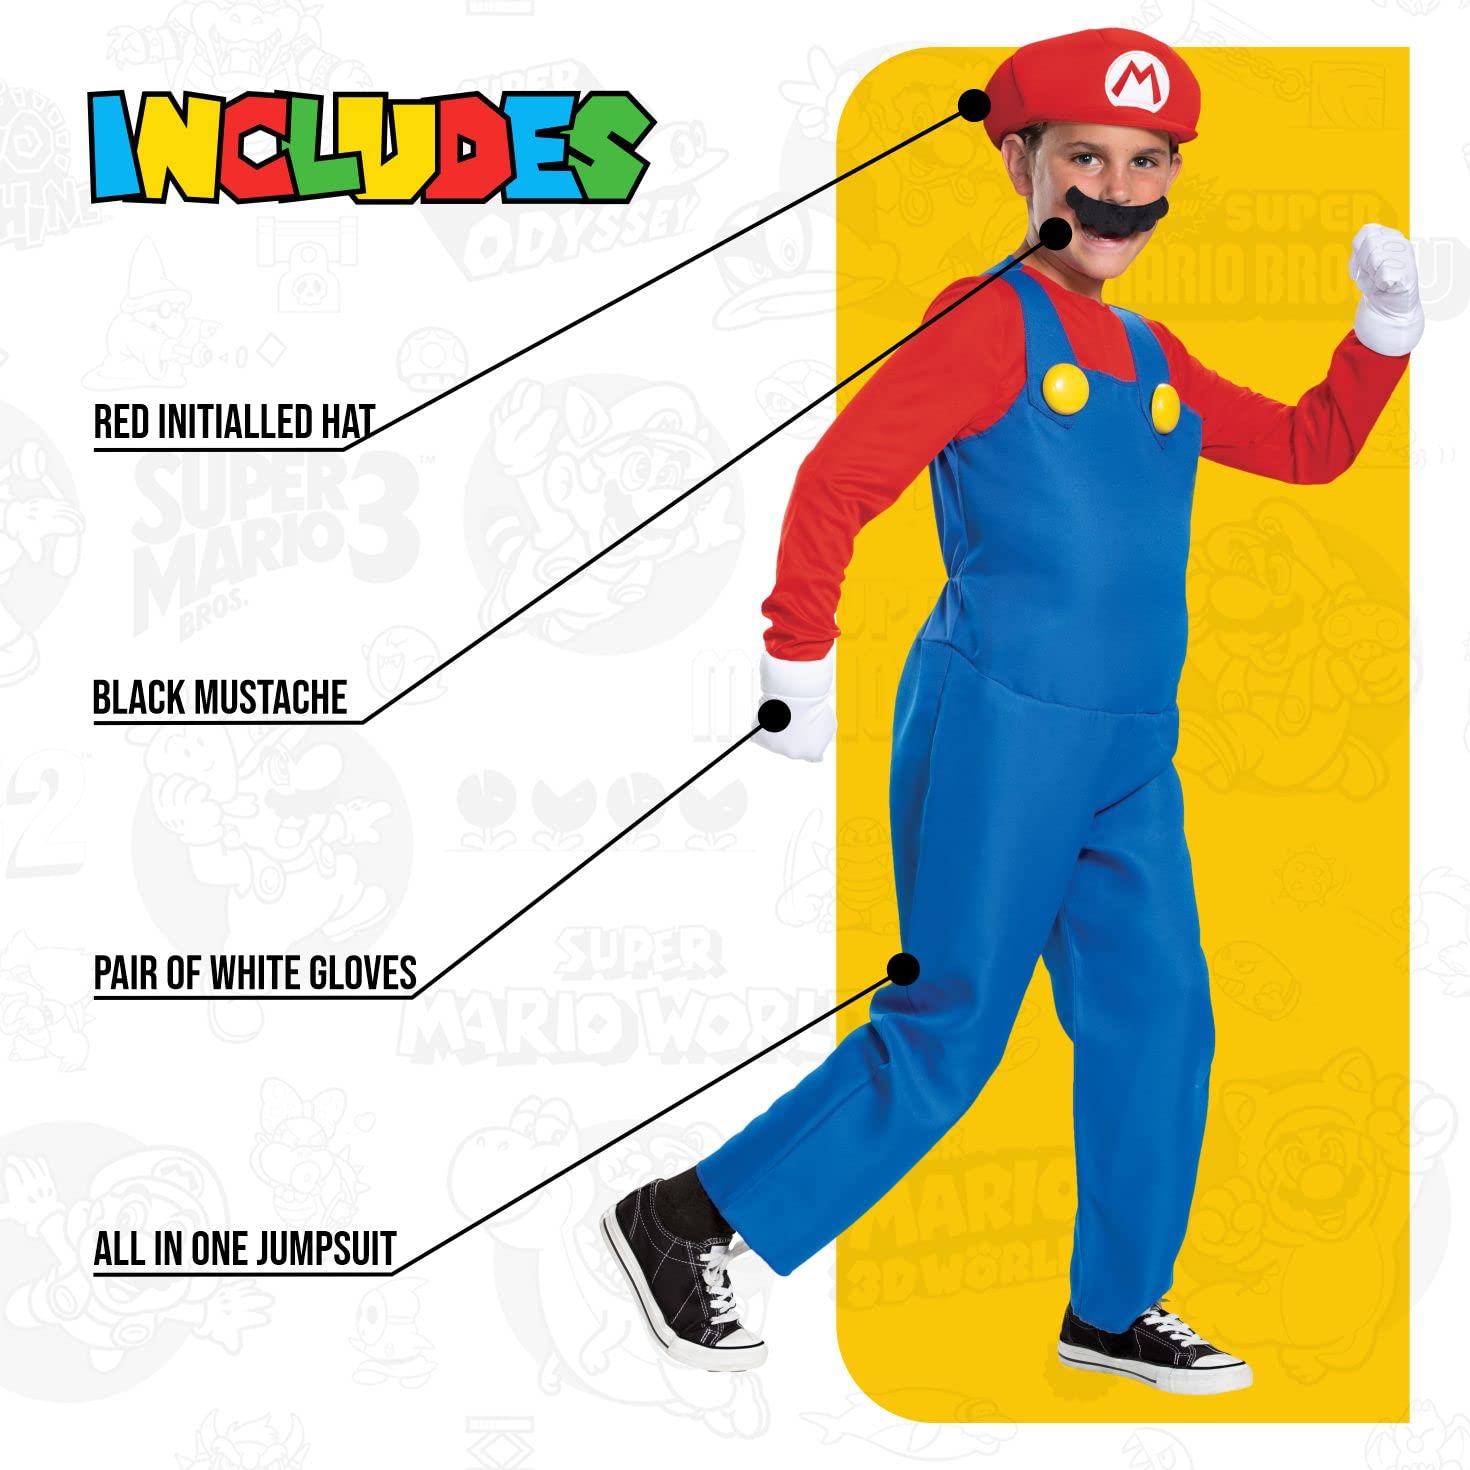 Mario Deluxe Child Boy Costume